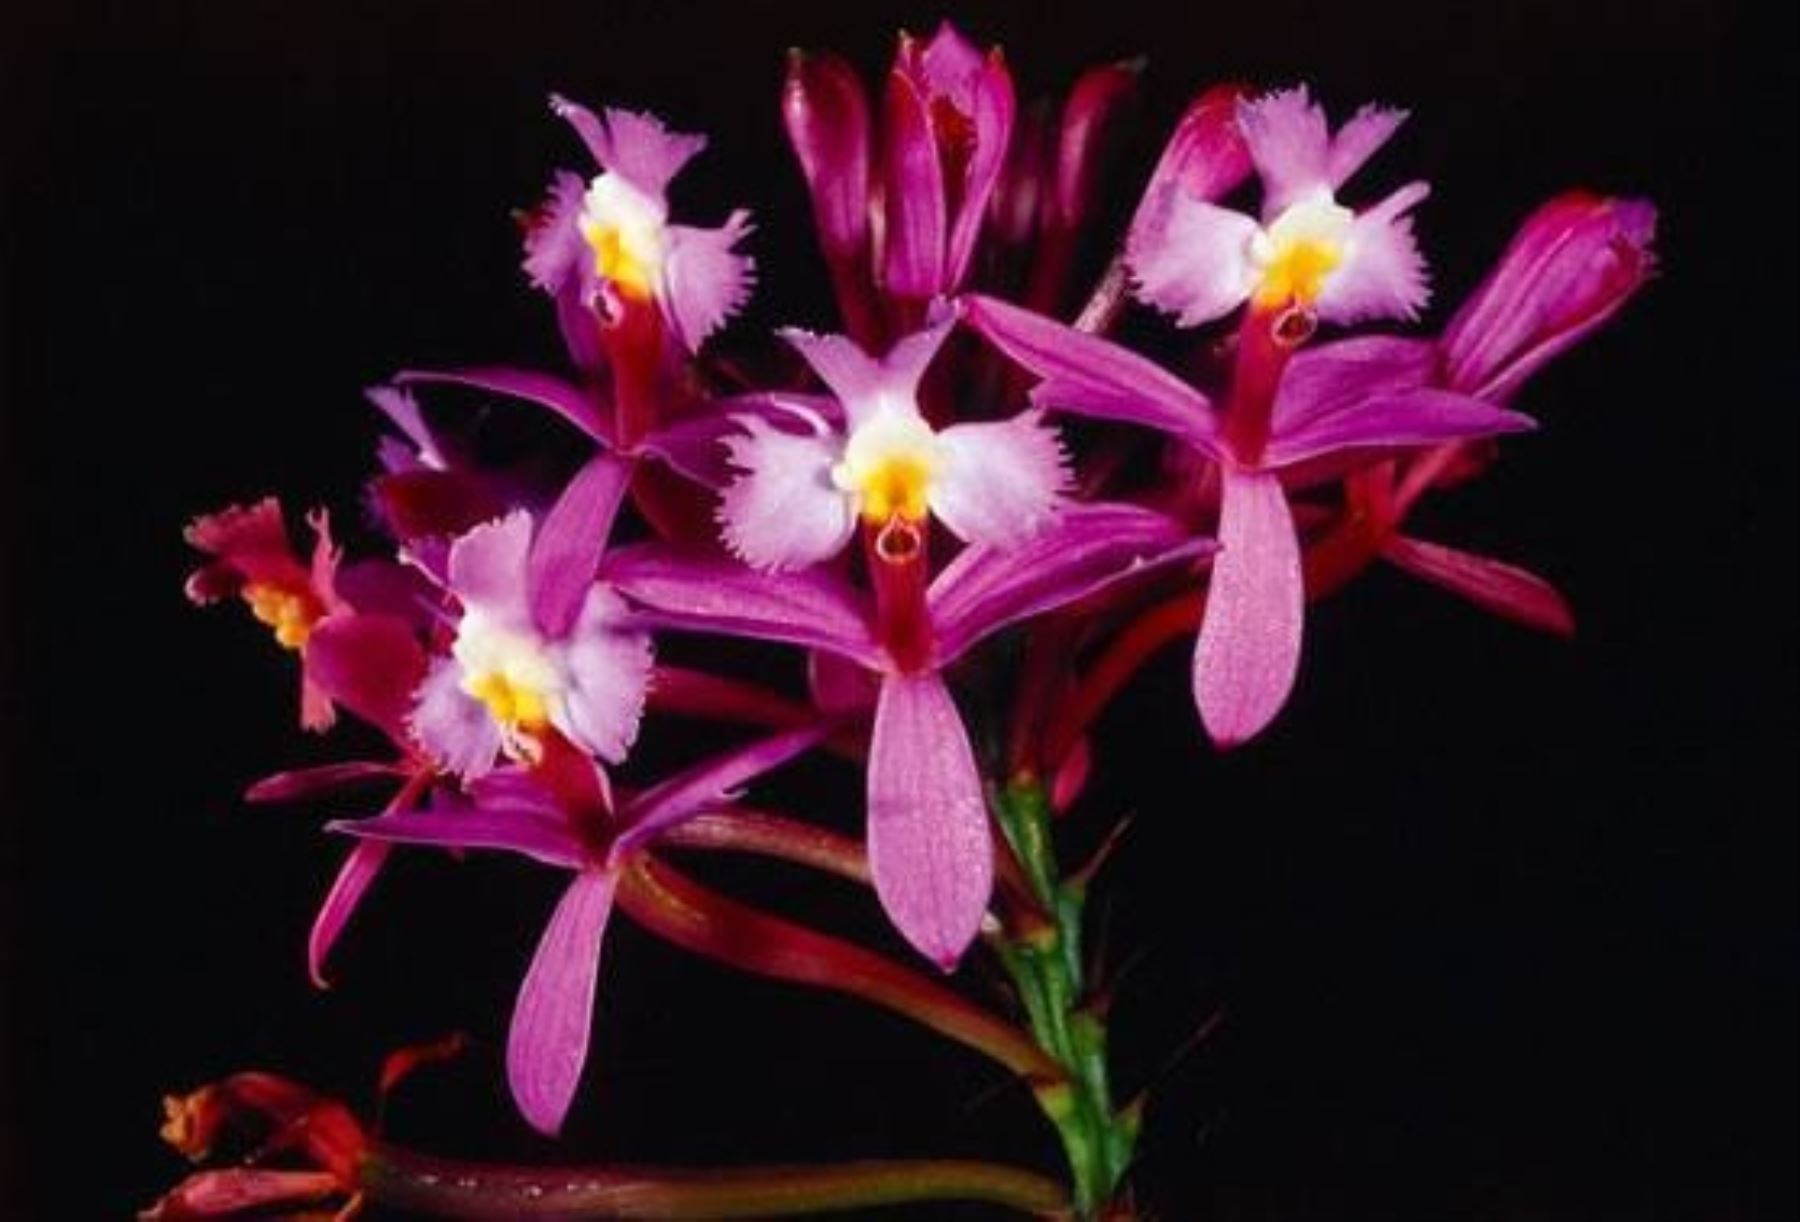 Orquídea "Epidendrum secundus", una de las 425 especies que existen en el santuario histórico de Machu Picchu.